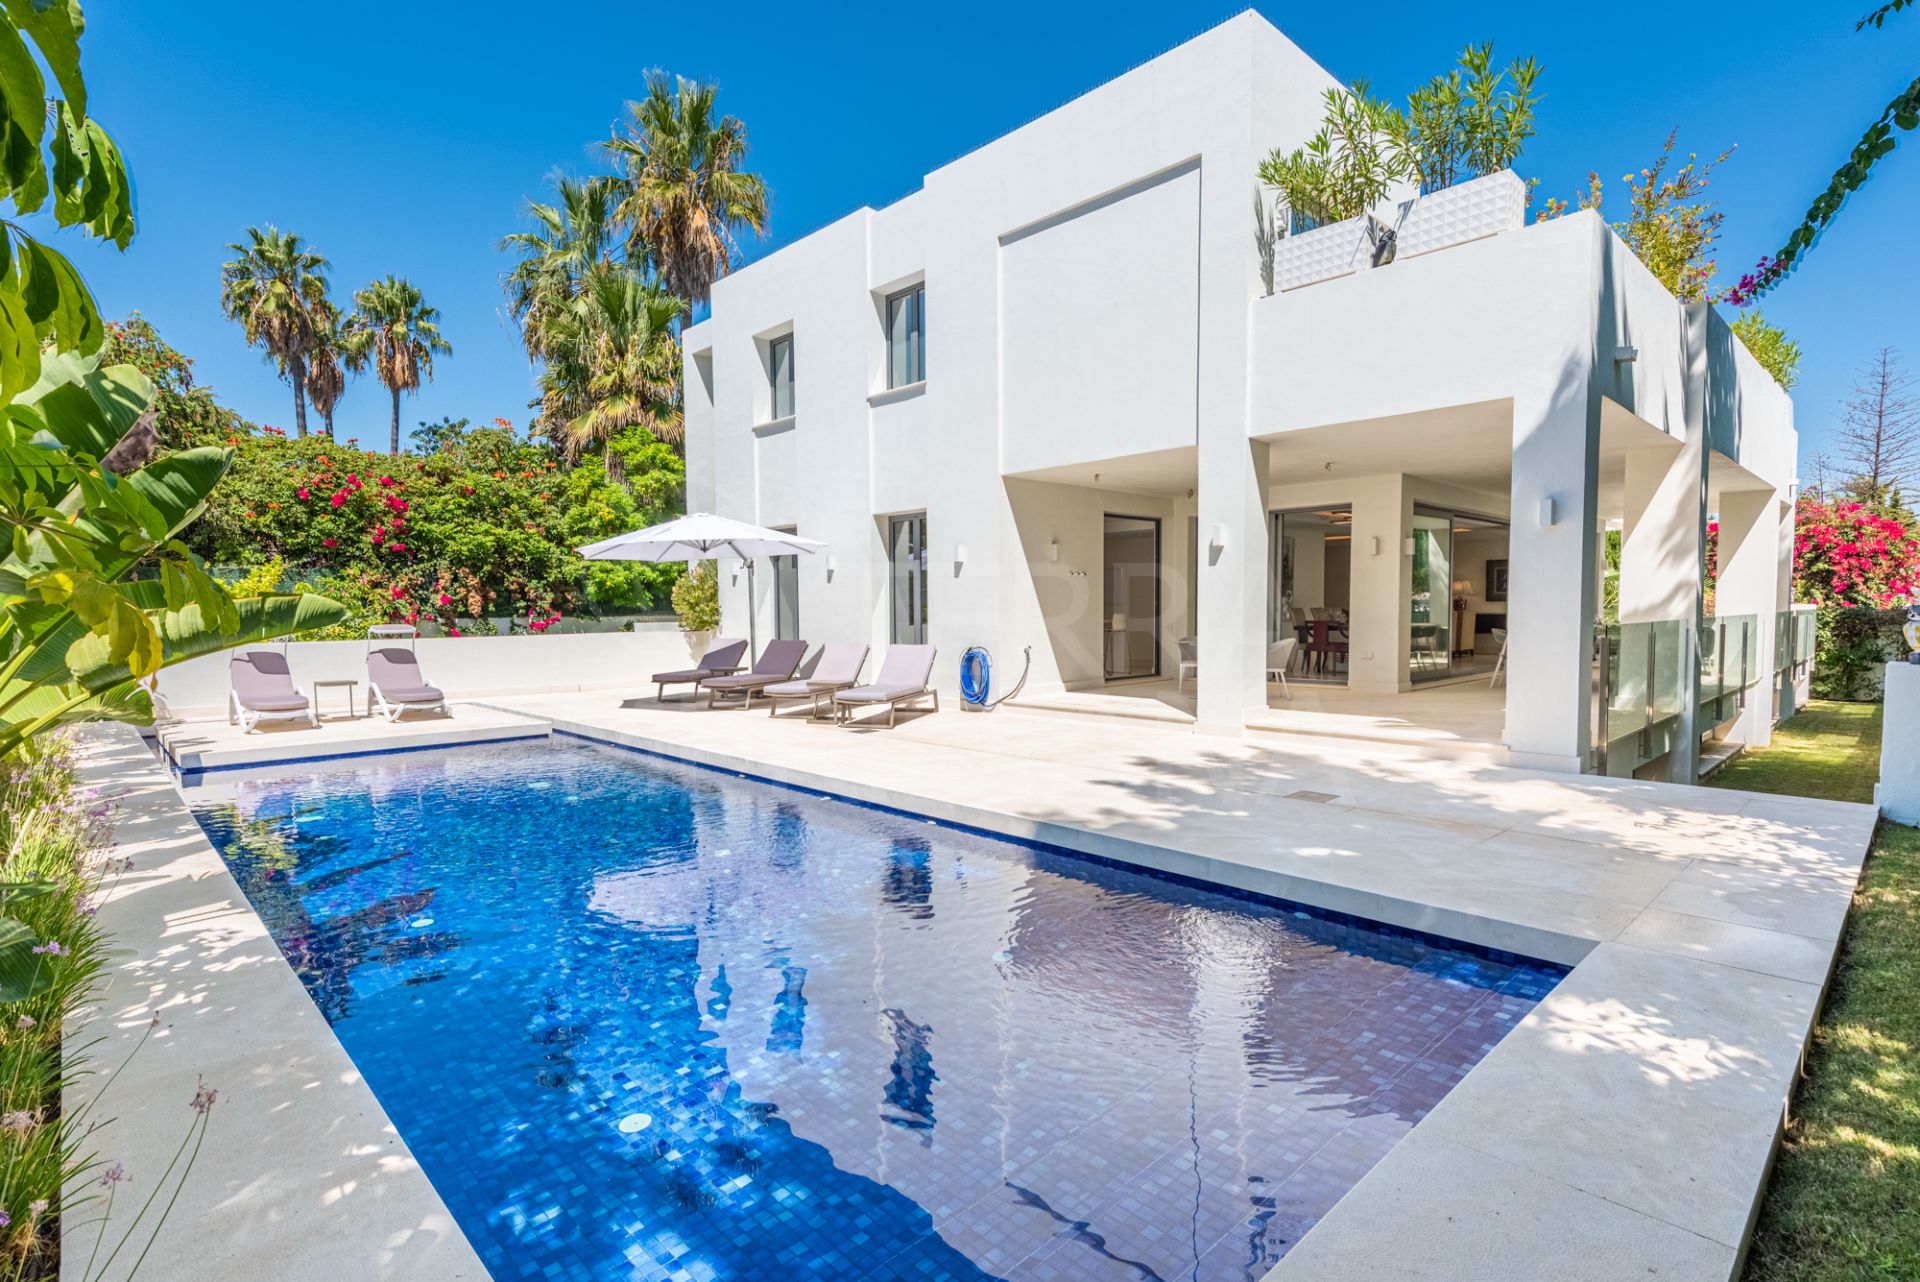 Magnífica villa de lujo de estilo contemporáneo a estrenar con 7 dormitorios en venta en Cortijo Blanco, Marbella